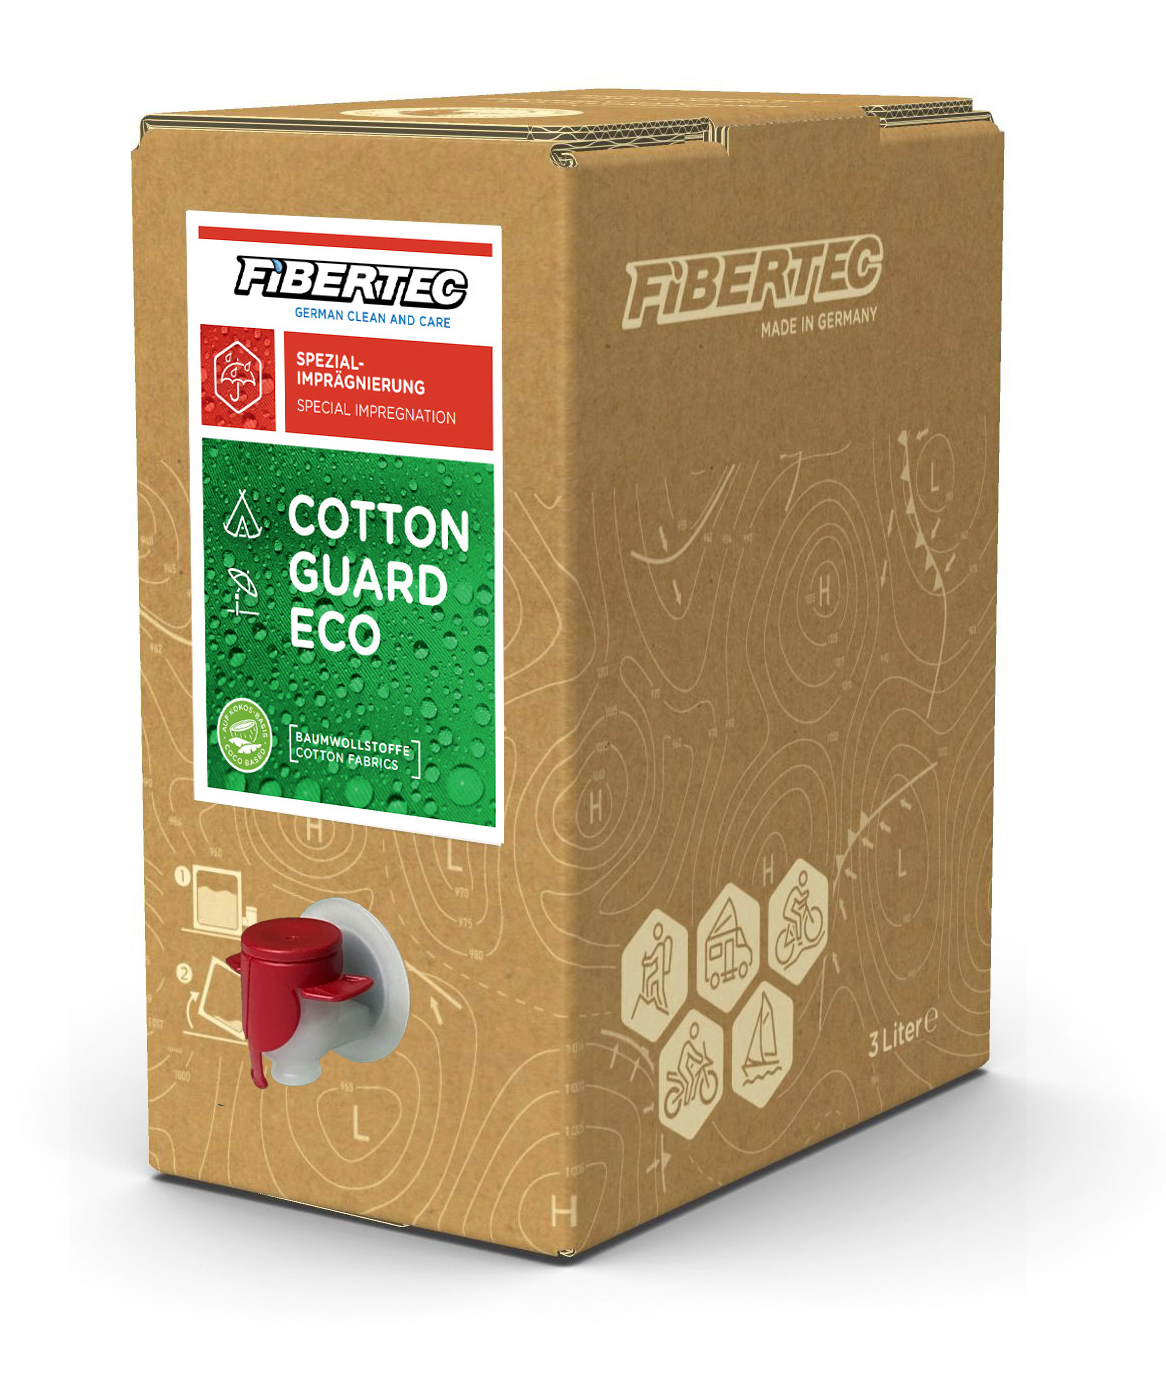 Cotton Guard Eco